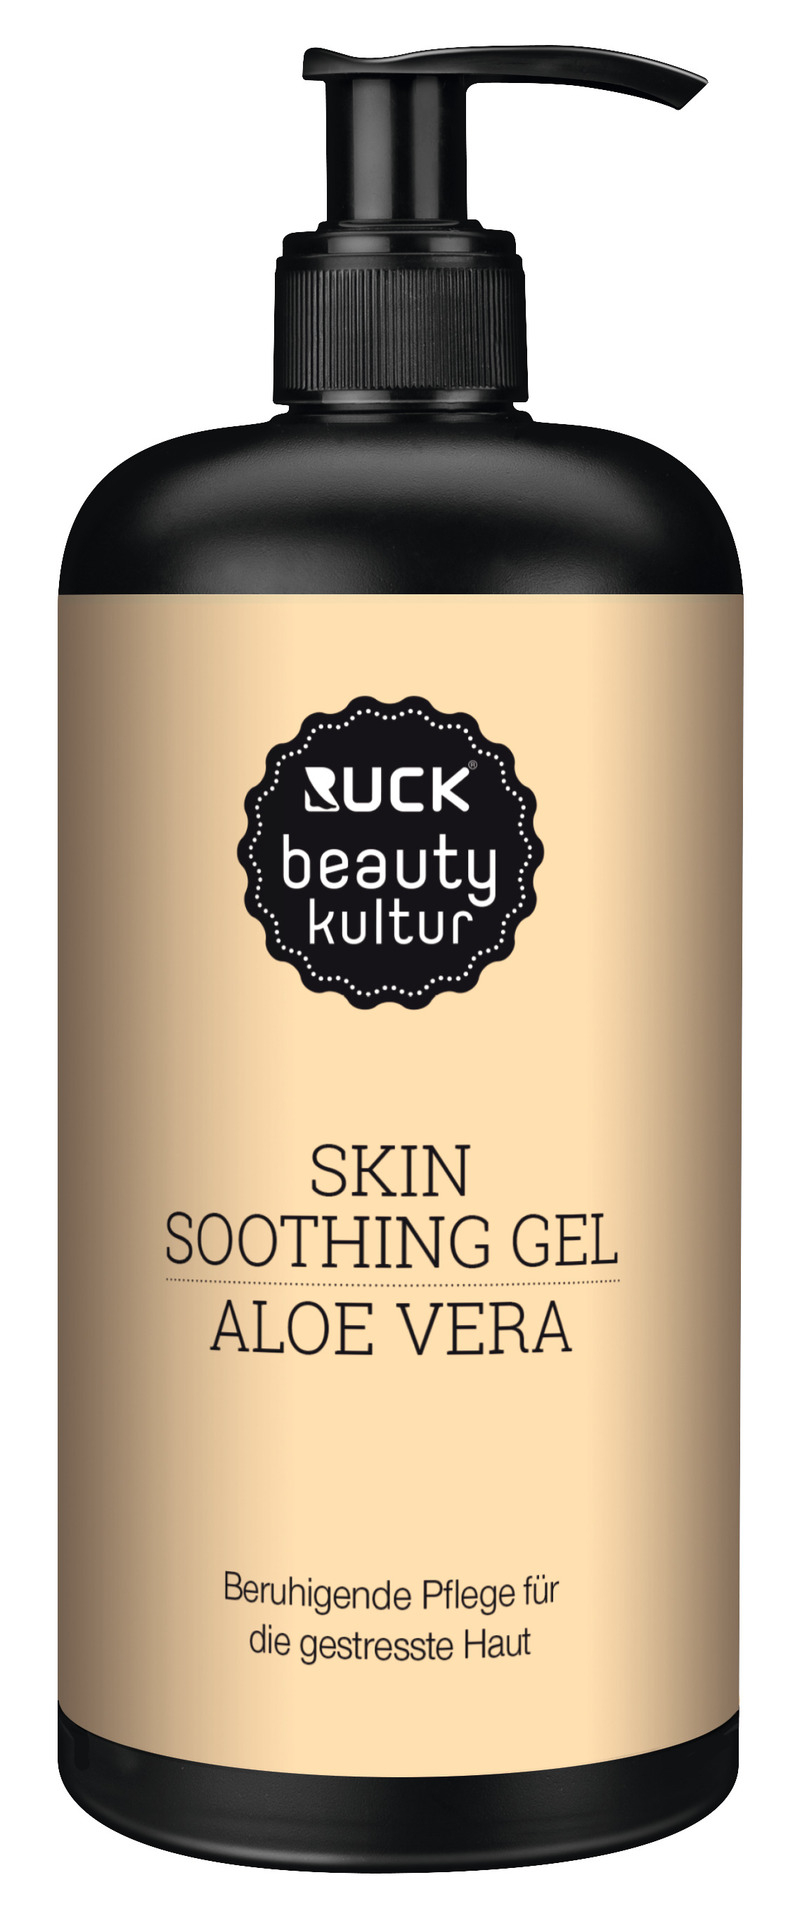 RUCK beautykultur SKIN soothing Gel | 500 ml